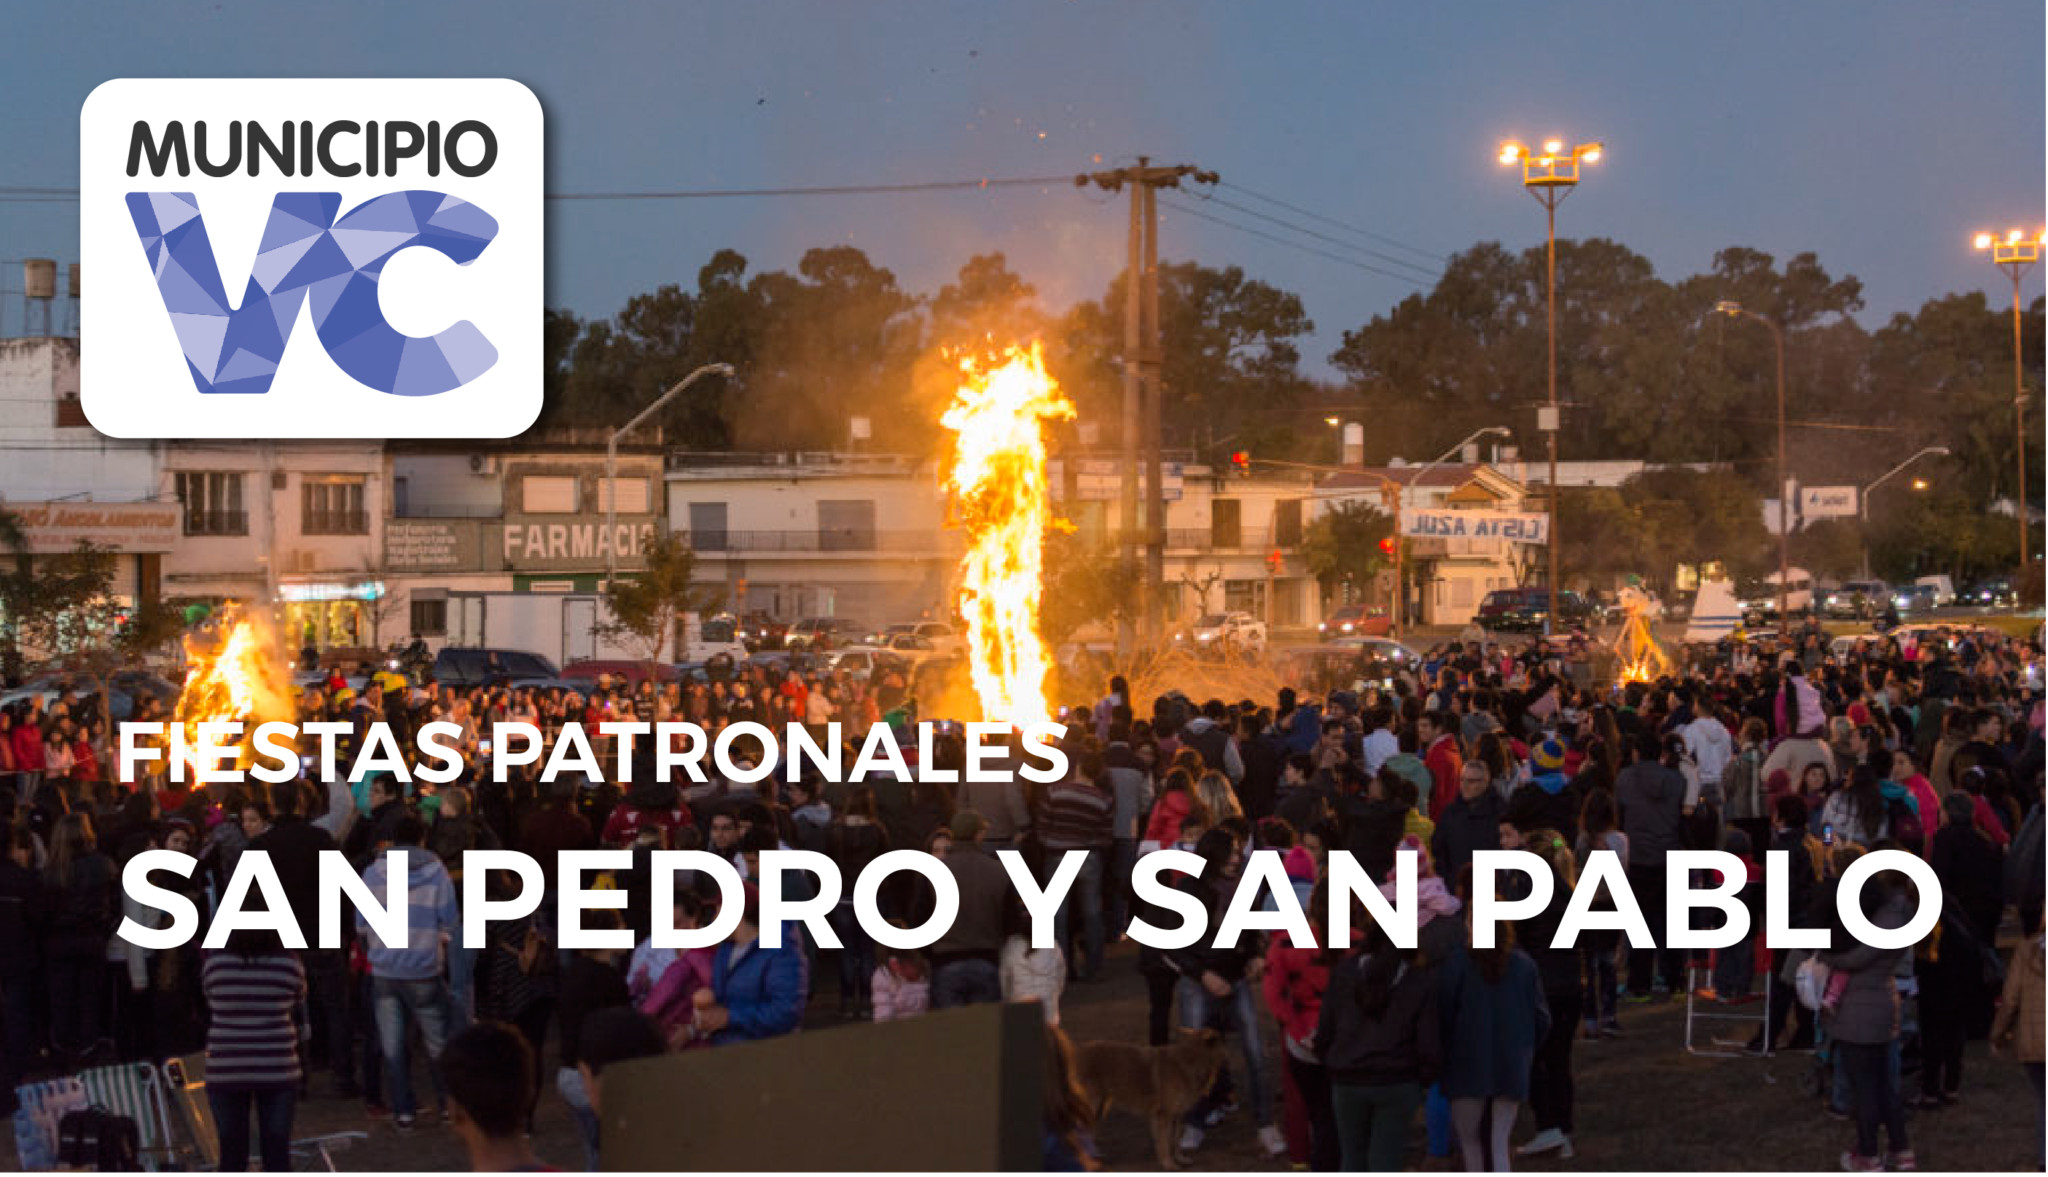 Música, danza y quema de muñecos en el Día de San Pedro y San Pablo